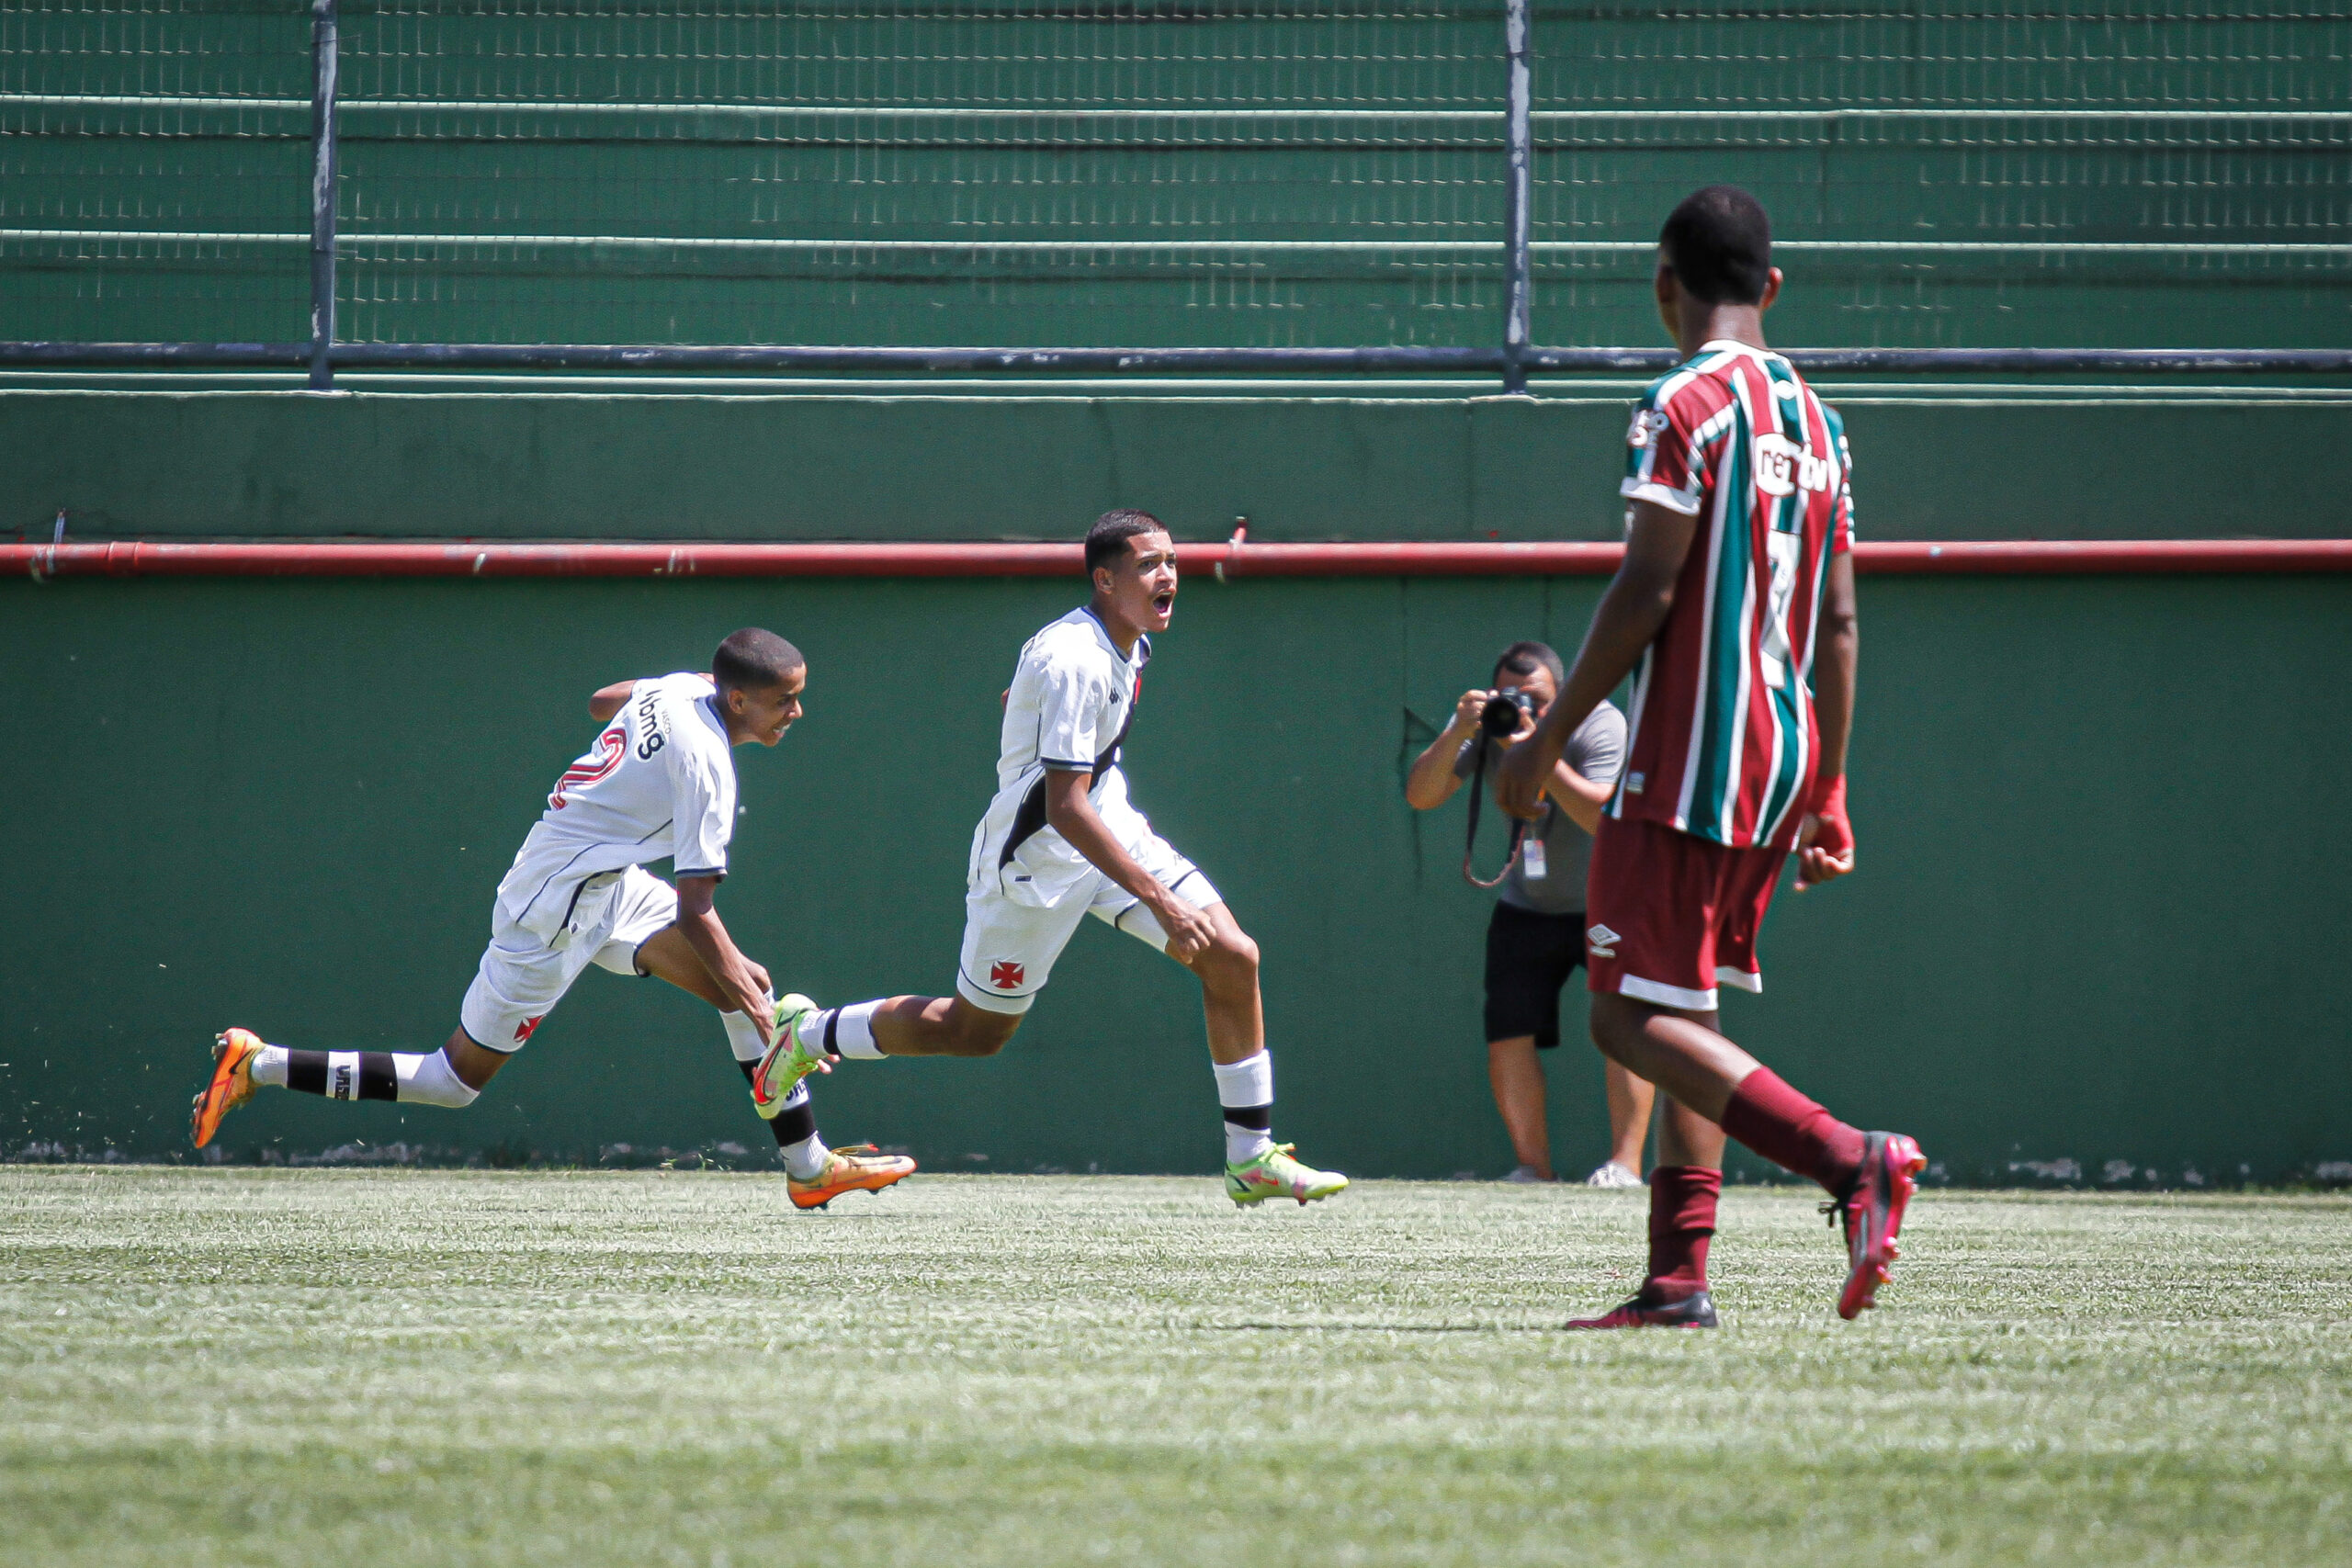 Vasco da Gama e Sporting vencem no segundo dia de Fase Final de Sub16  masculinos